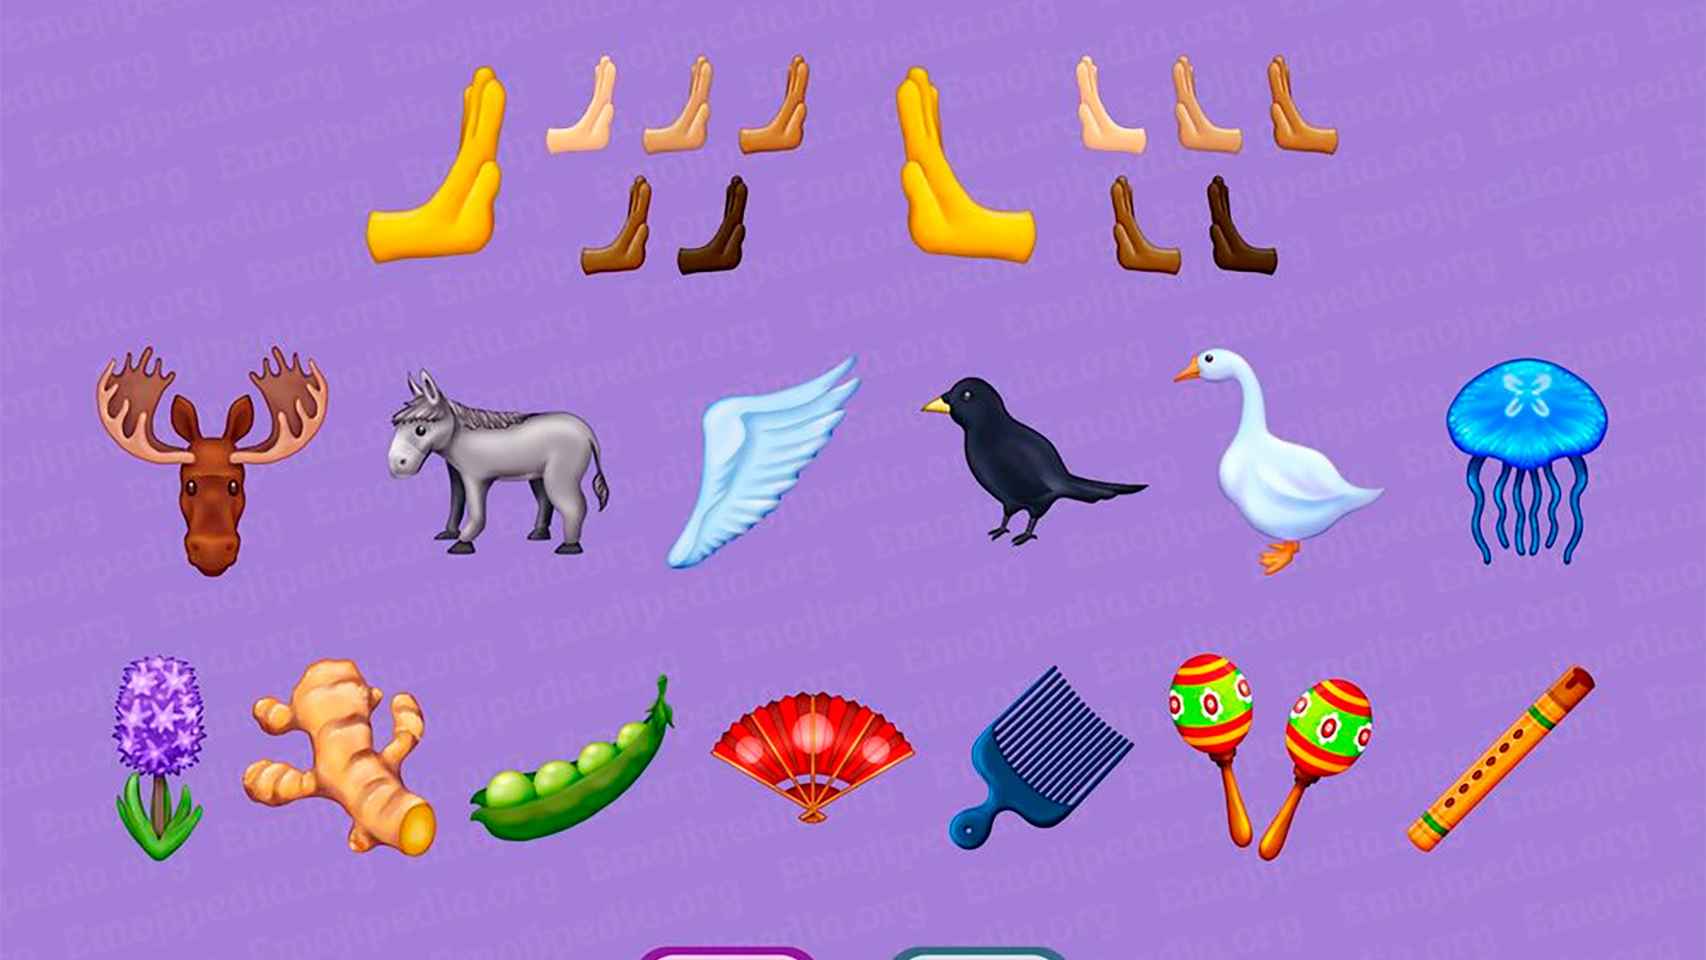 Los emojis nuevos de Unicode 15.0